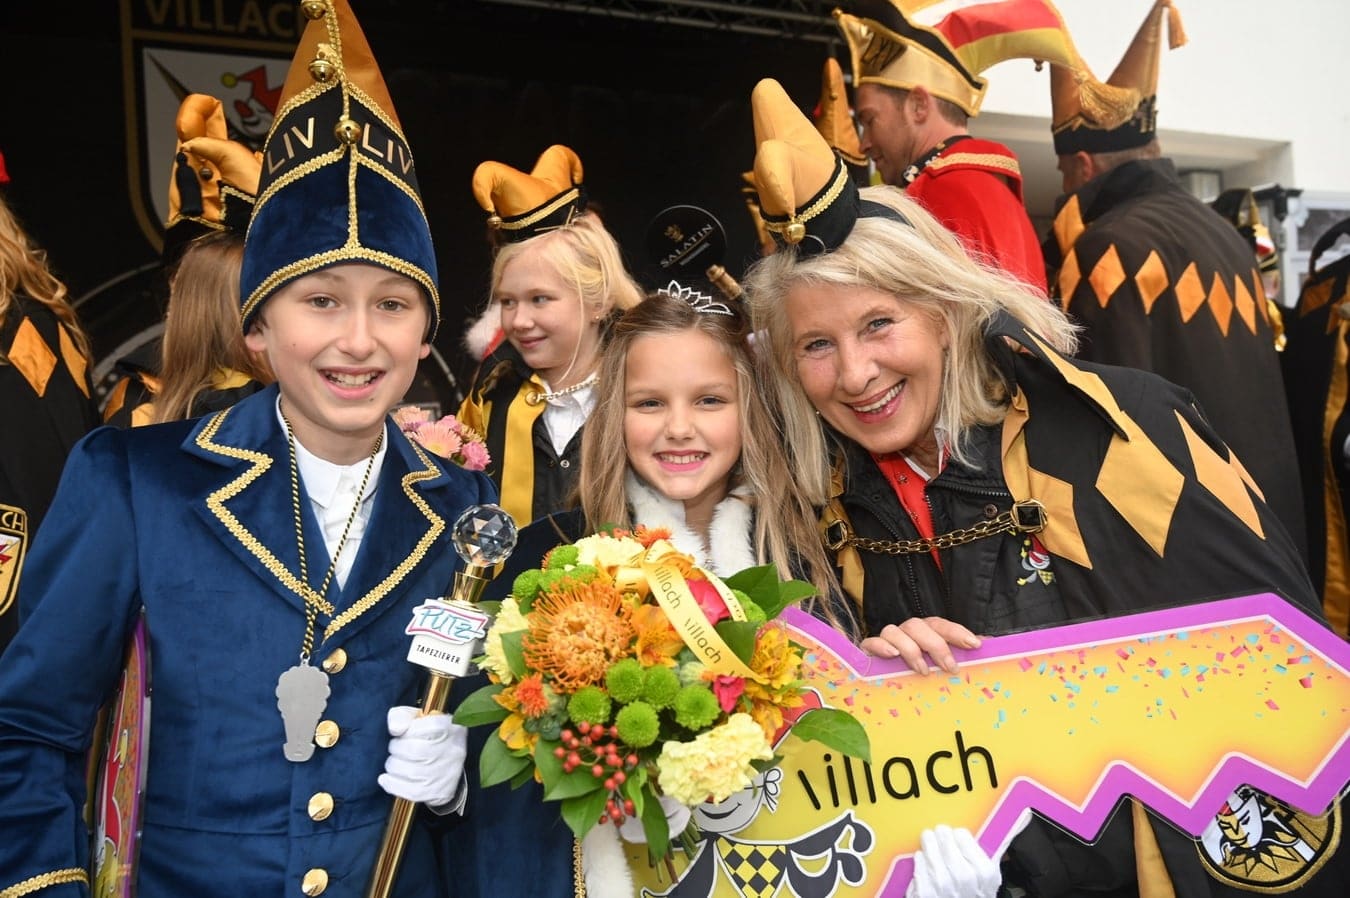 Prinzessin Nahla I., Runda (10), und Prinz Gaudelius LIV., Philipp Putz (11), bilden das neue Kinderprinzenpaar der Villacher Faschingsgilde.